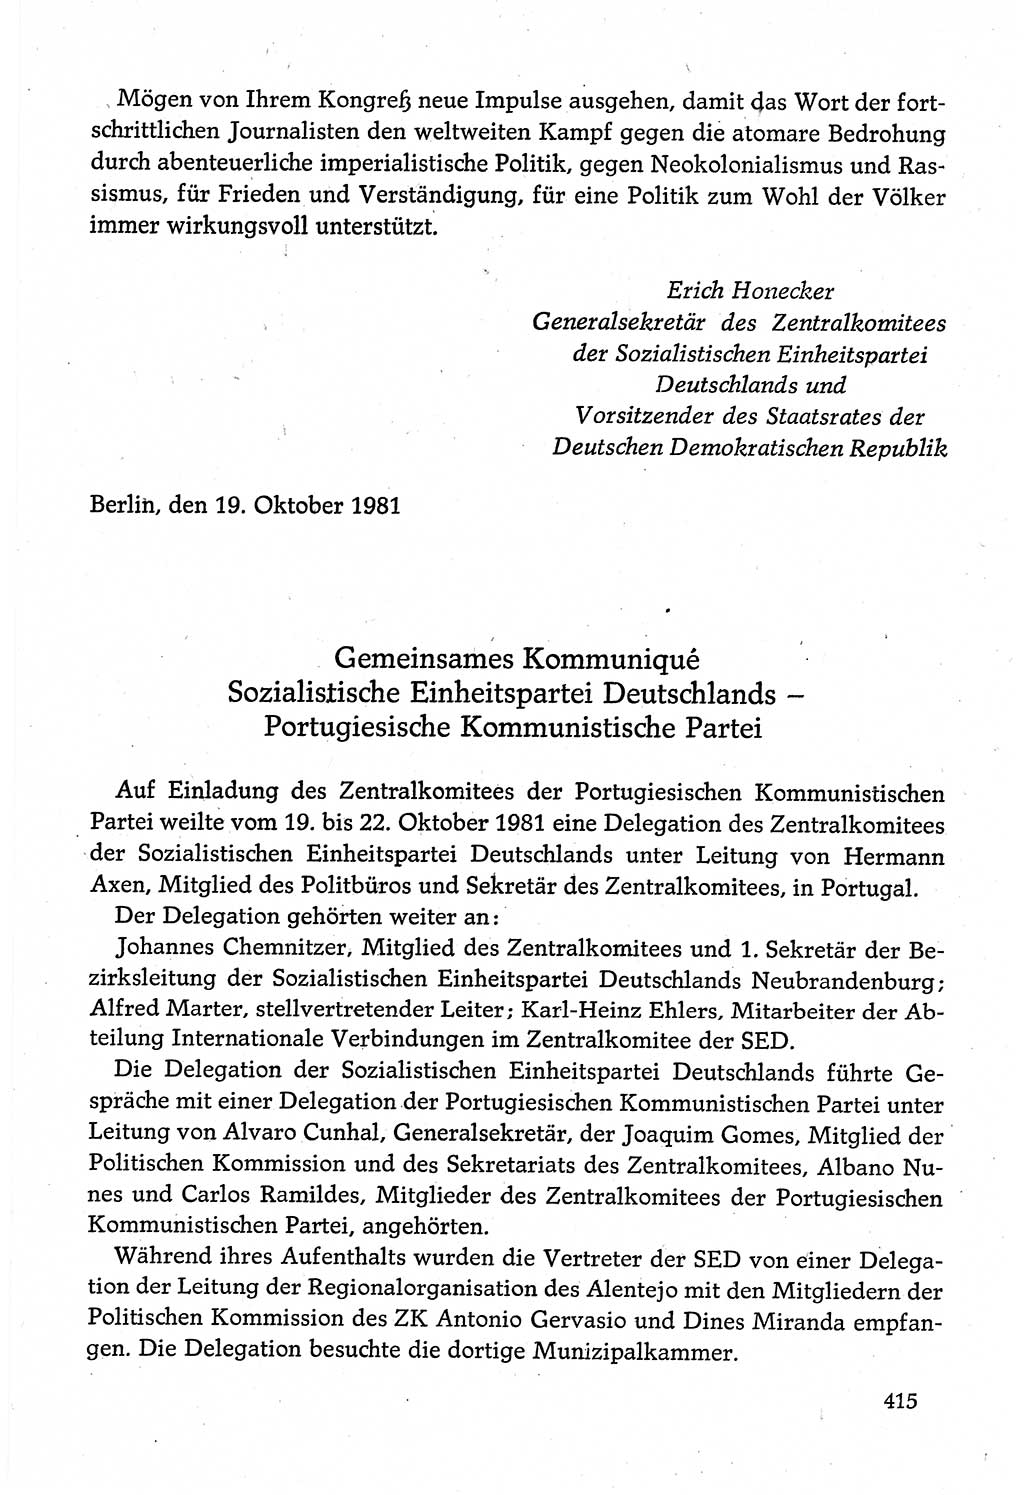 Dokumente der Sozialistischen Einheitspartei Deutschlands (SED) [Deutsche Demokratische Republik (DDR)] 1980-1981, Seite 415 (Dok. SED DDR 1980-1981, S. 415)